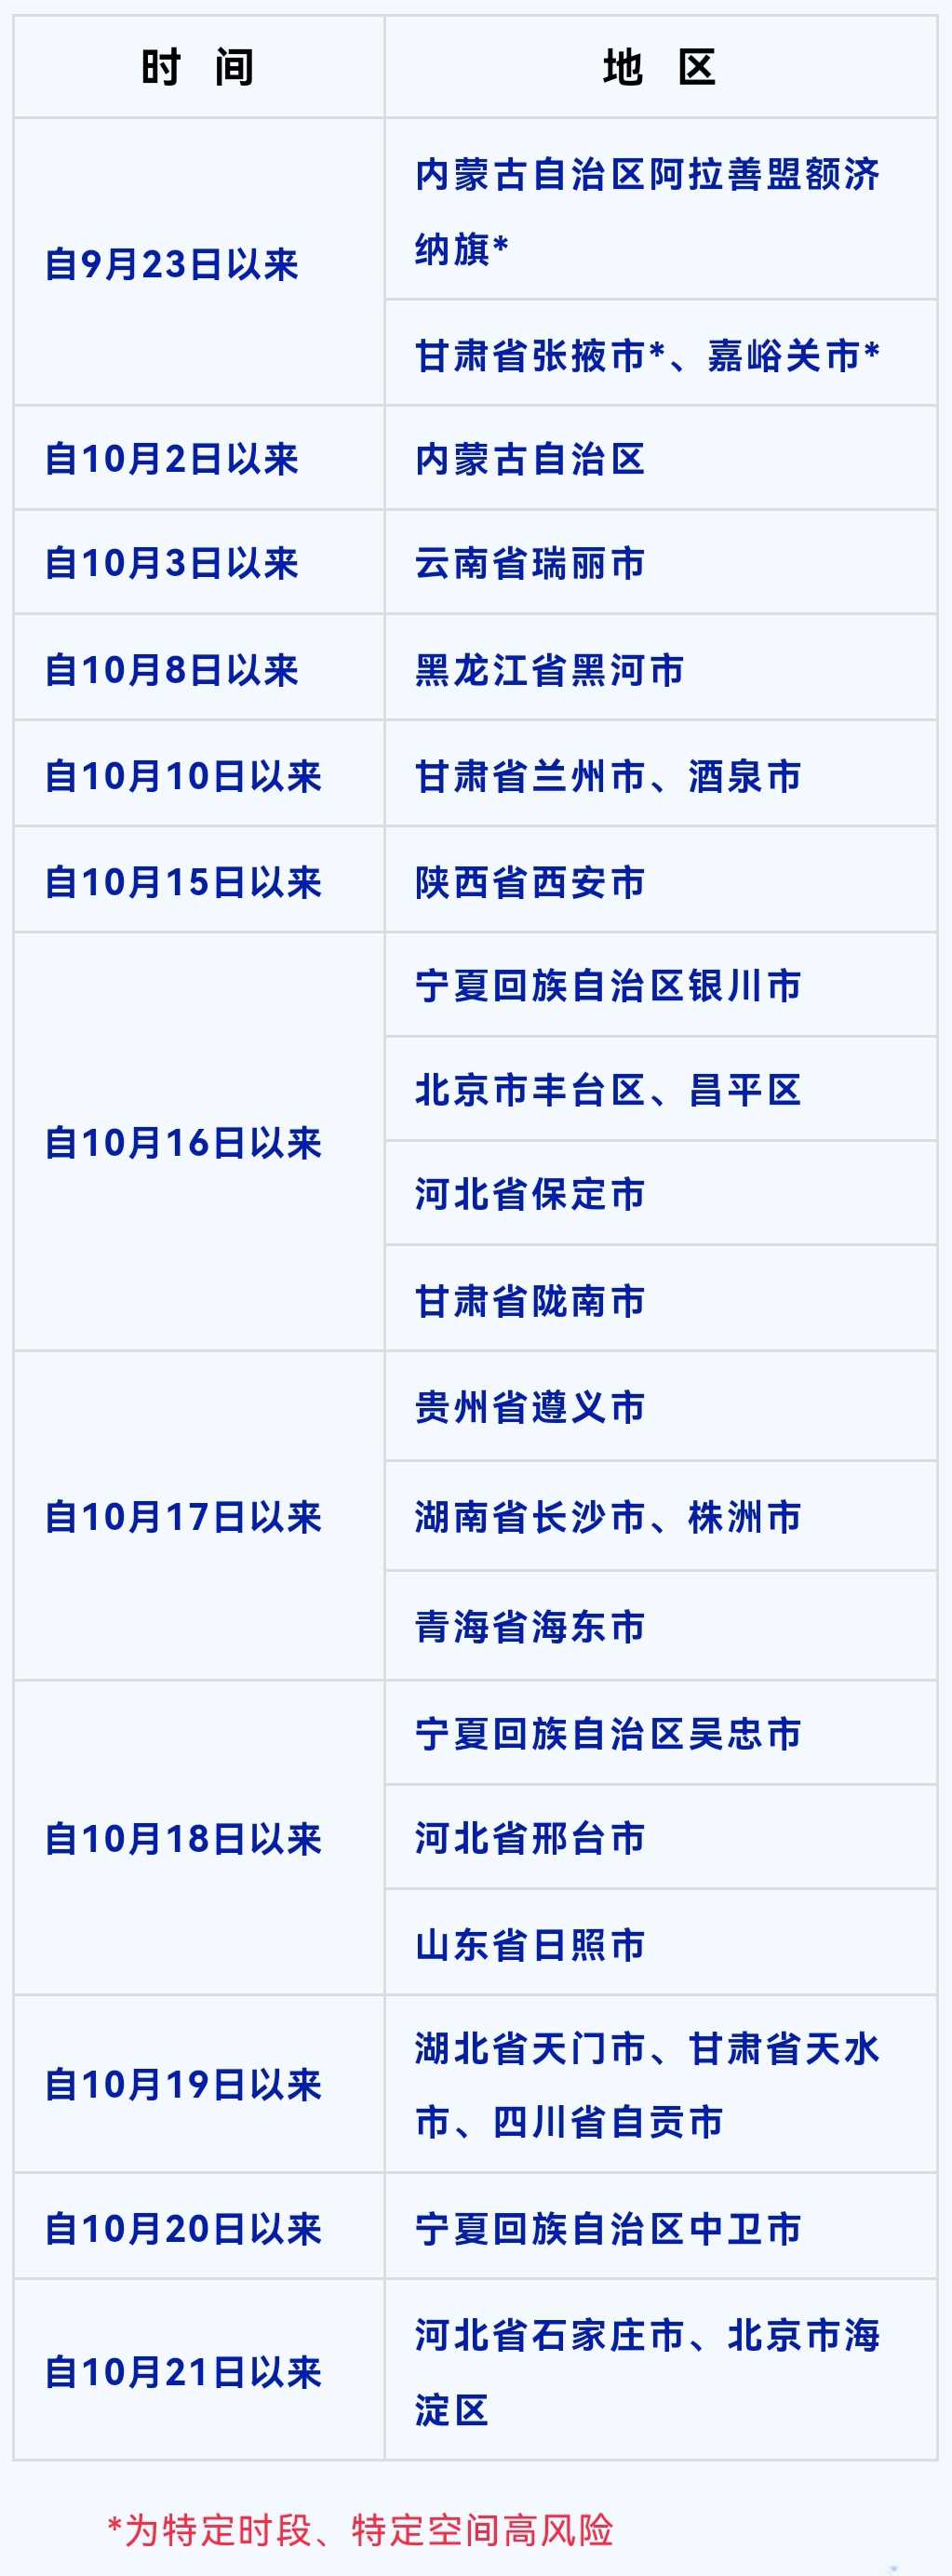 10月27日，重庆市疾控中心调整发布重点地区来渝返渝人员健康排查时段和范围，新范围较26日新增黑龙江省黑河市。